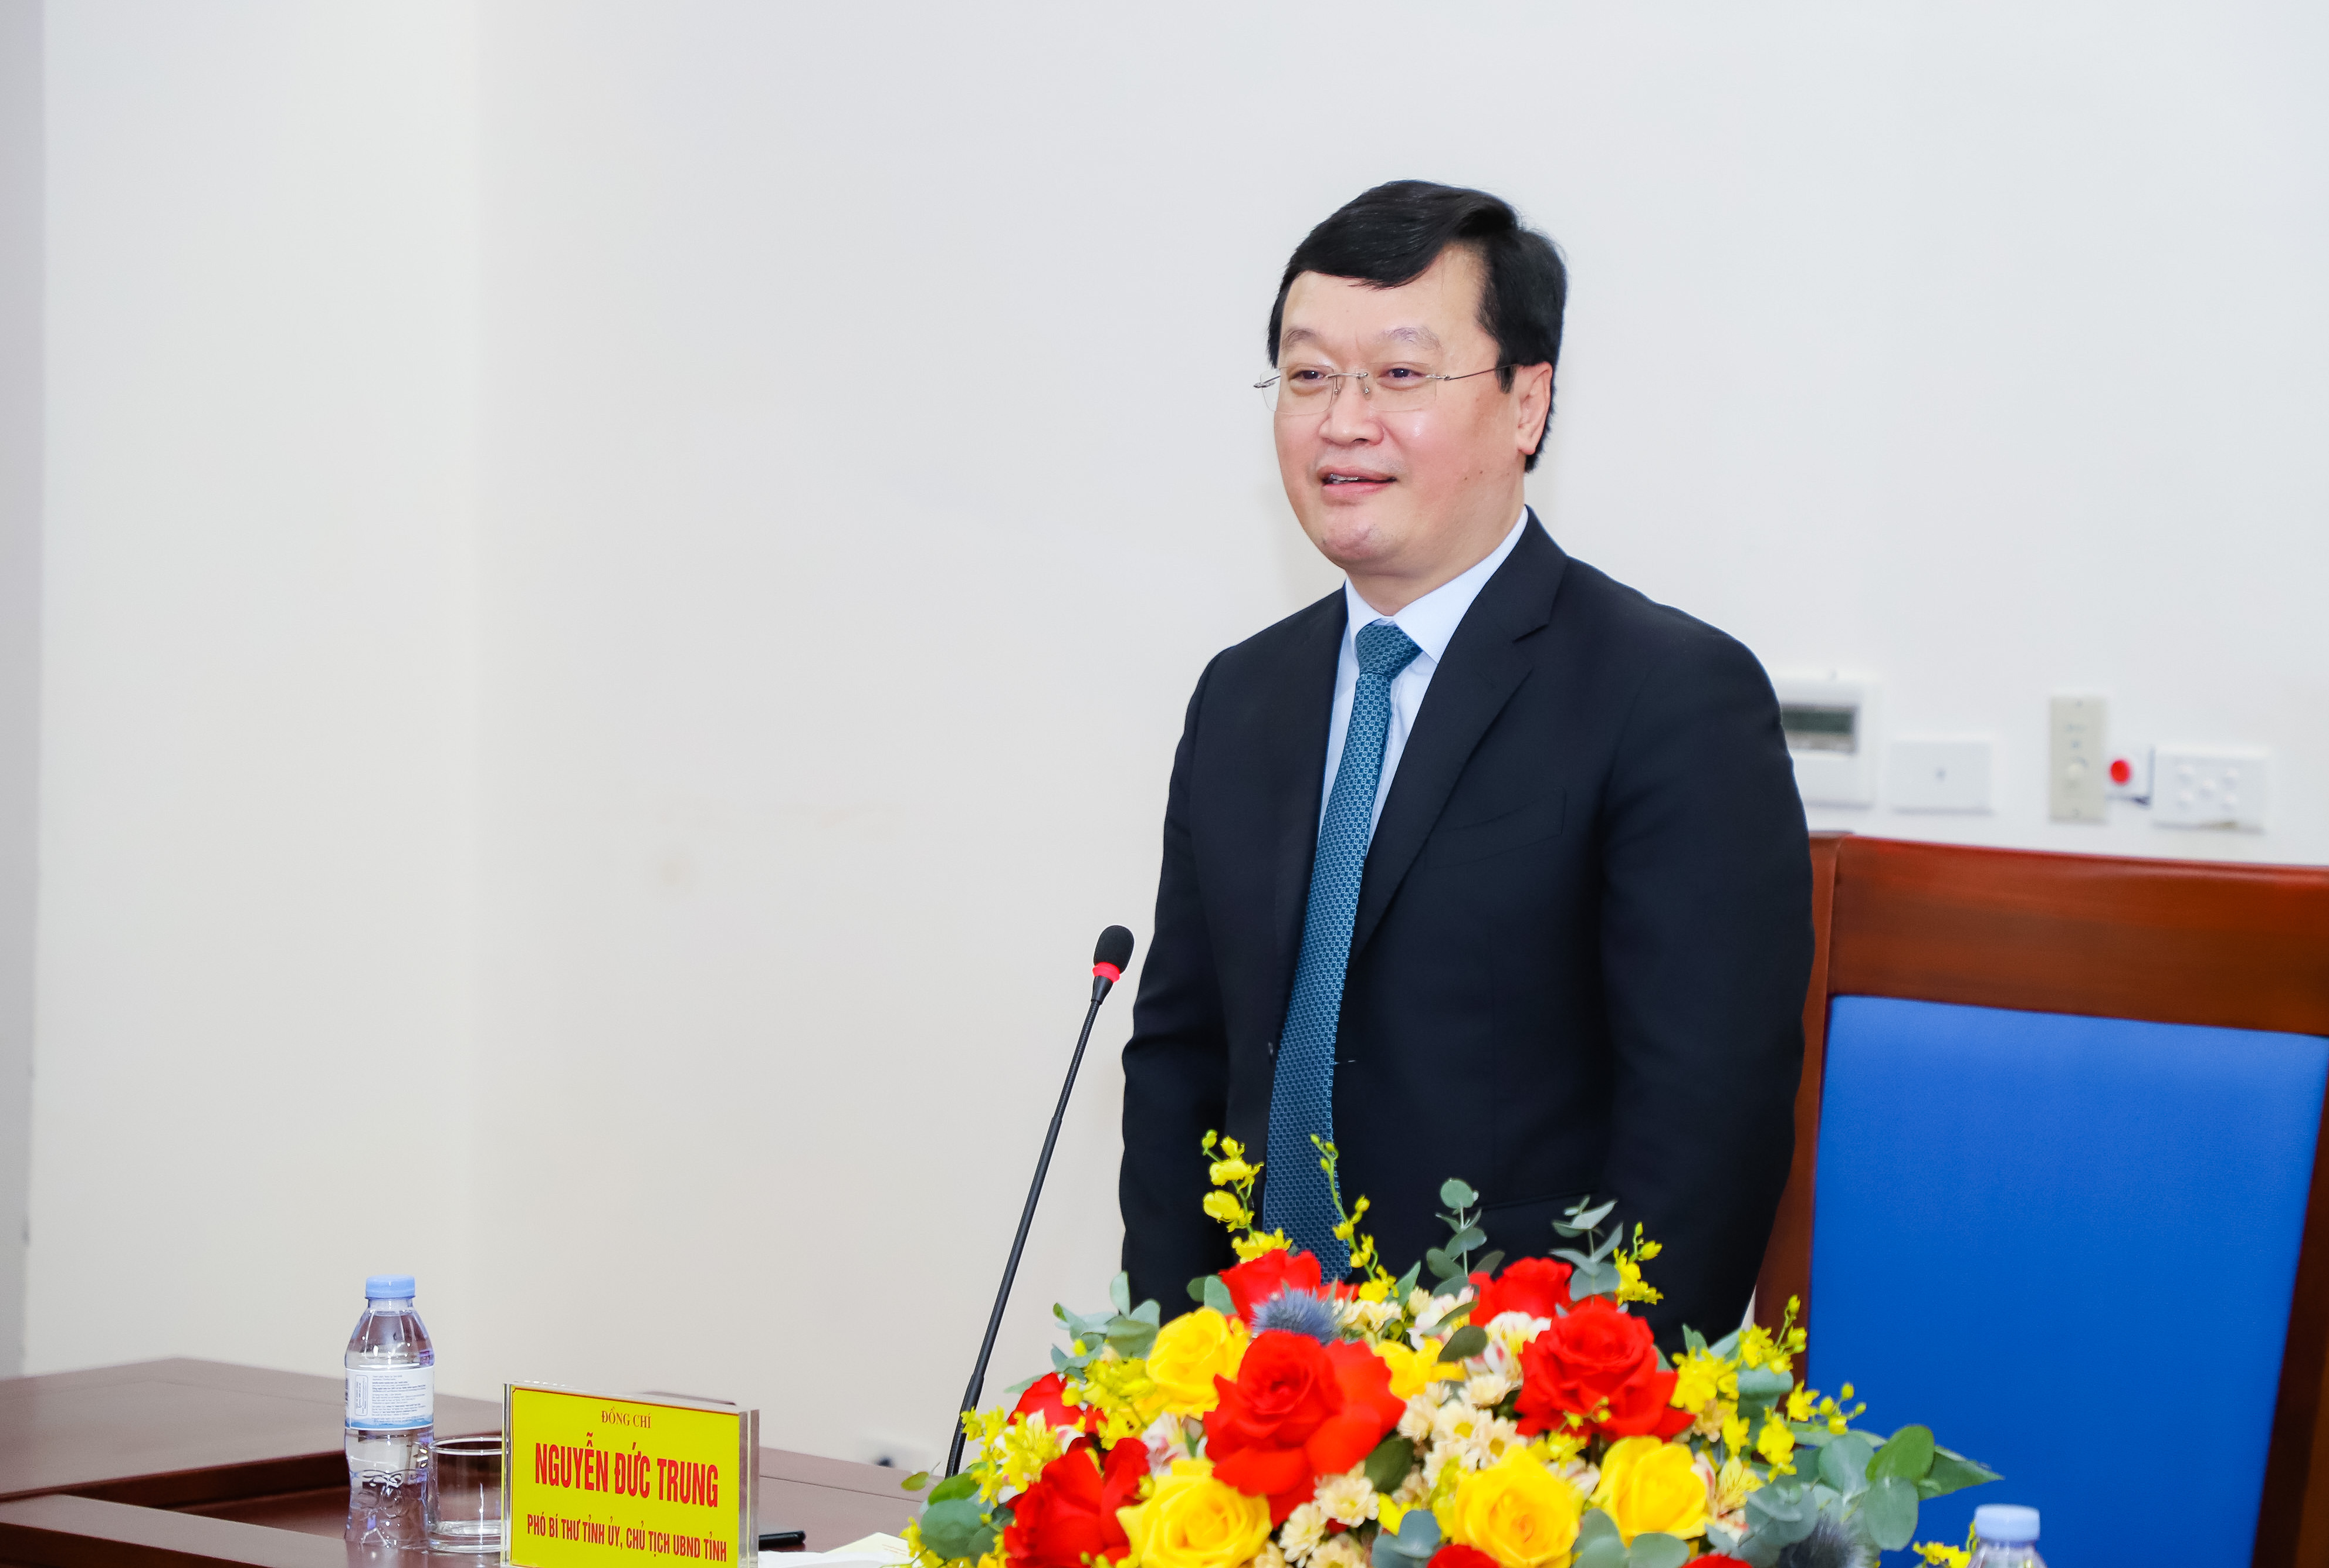 Đồng chí Nguyễn Đức Trung - Chủ tịch UBND tỉnh Nghệ An phát biểu tại buổi lễ. Ảnh: Phạm Bằng